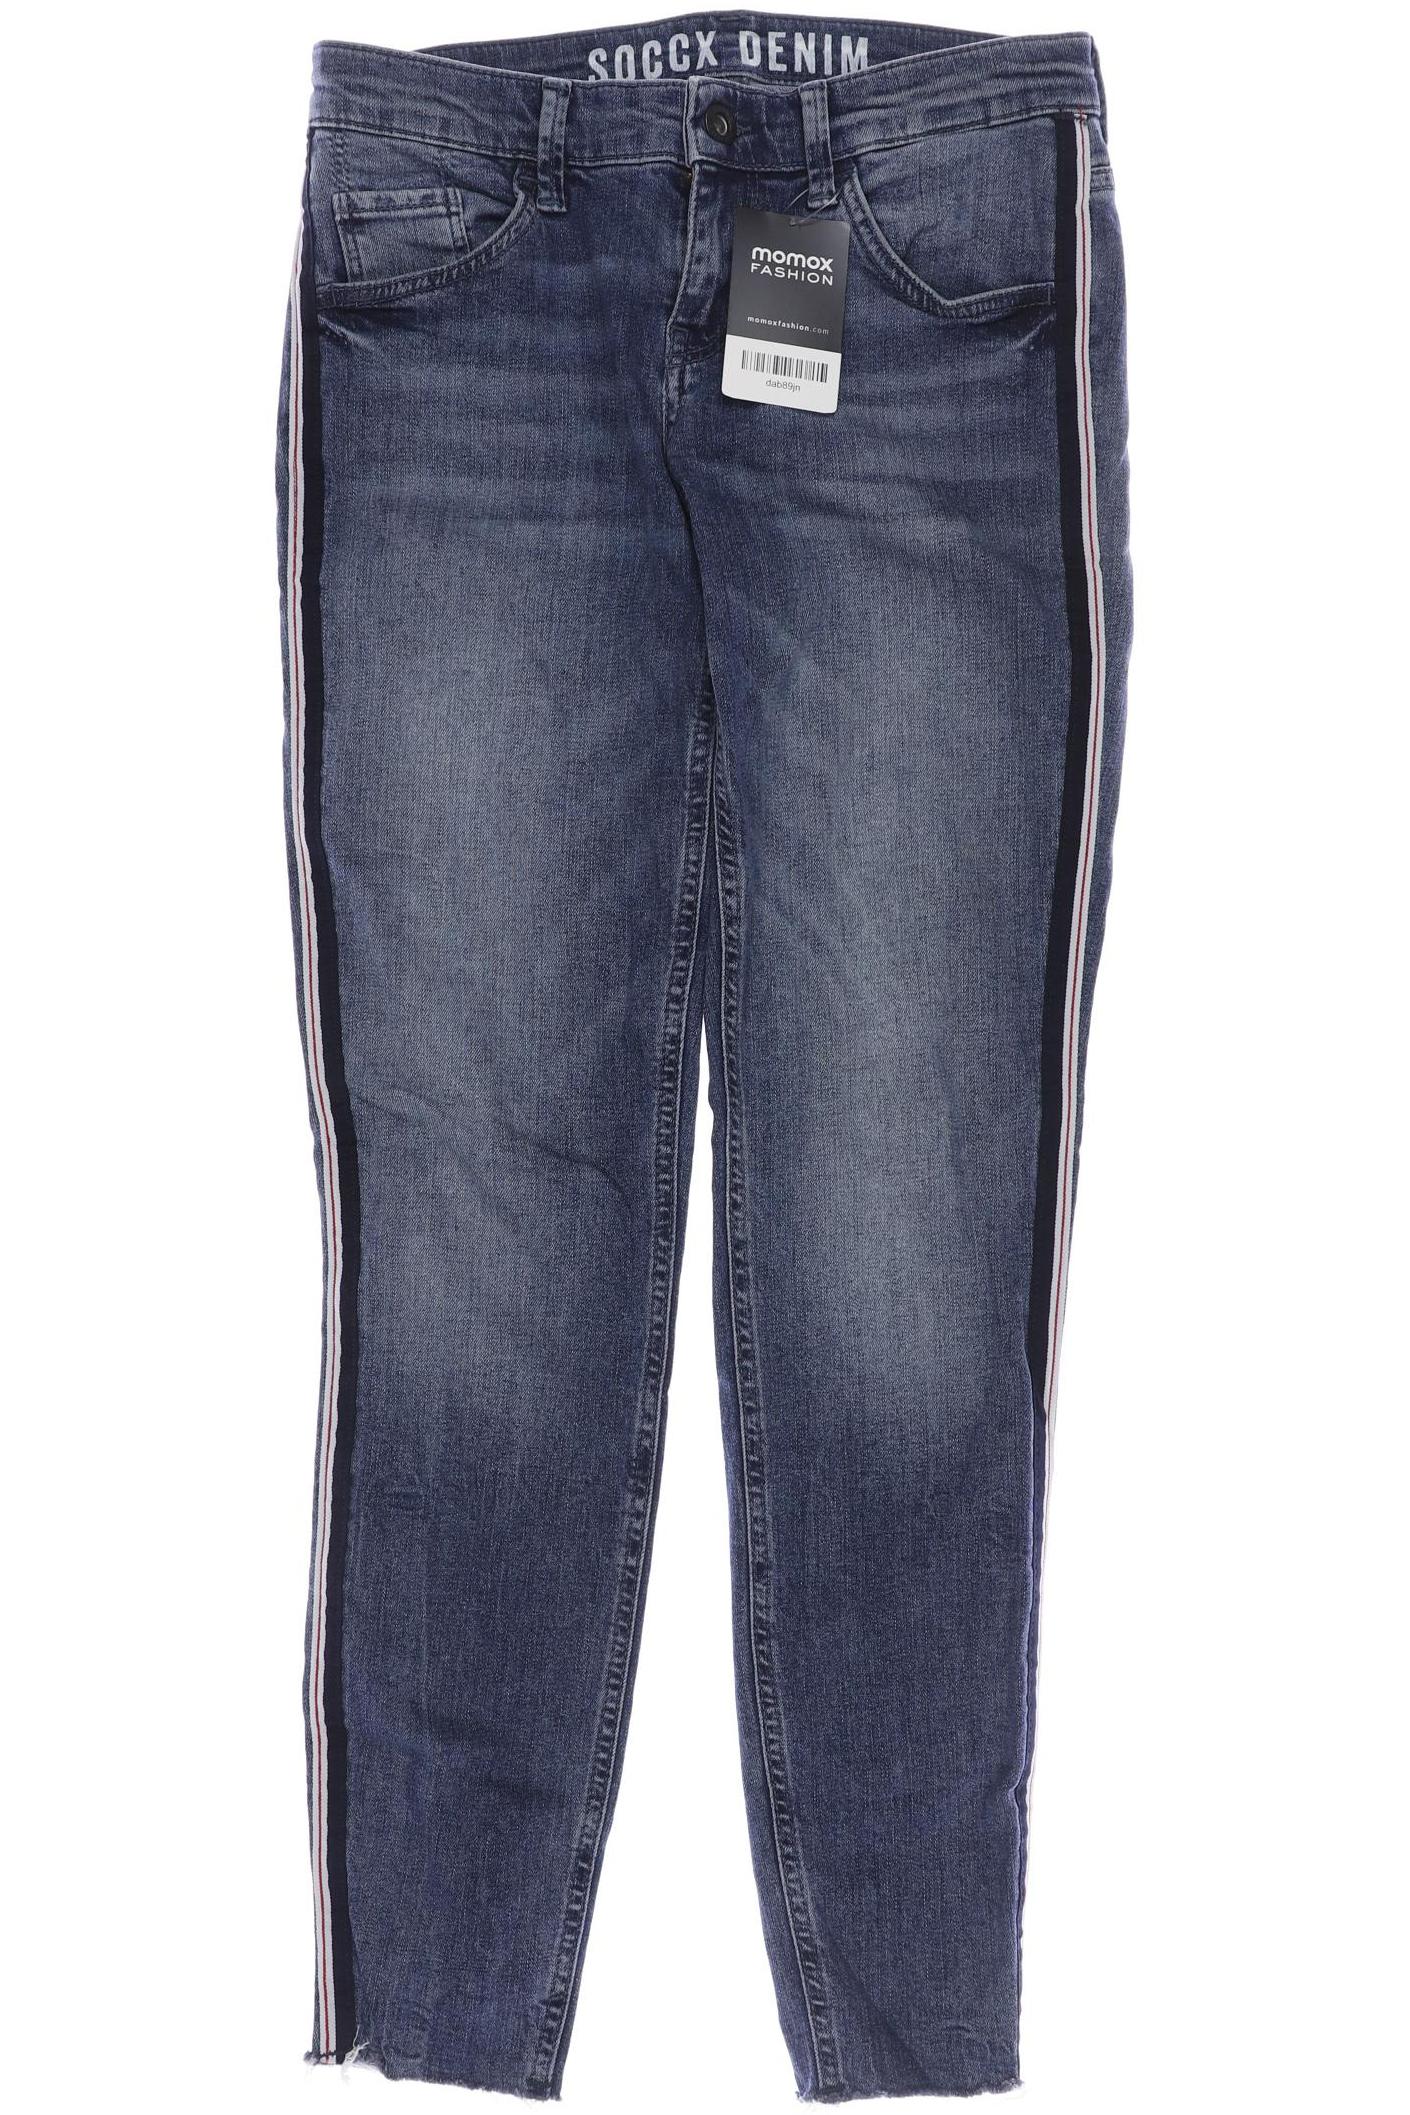 Soccx Damen Jeans, blau, Gr. 38 von SOCCX